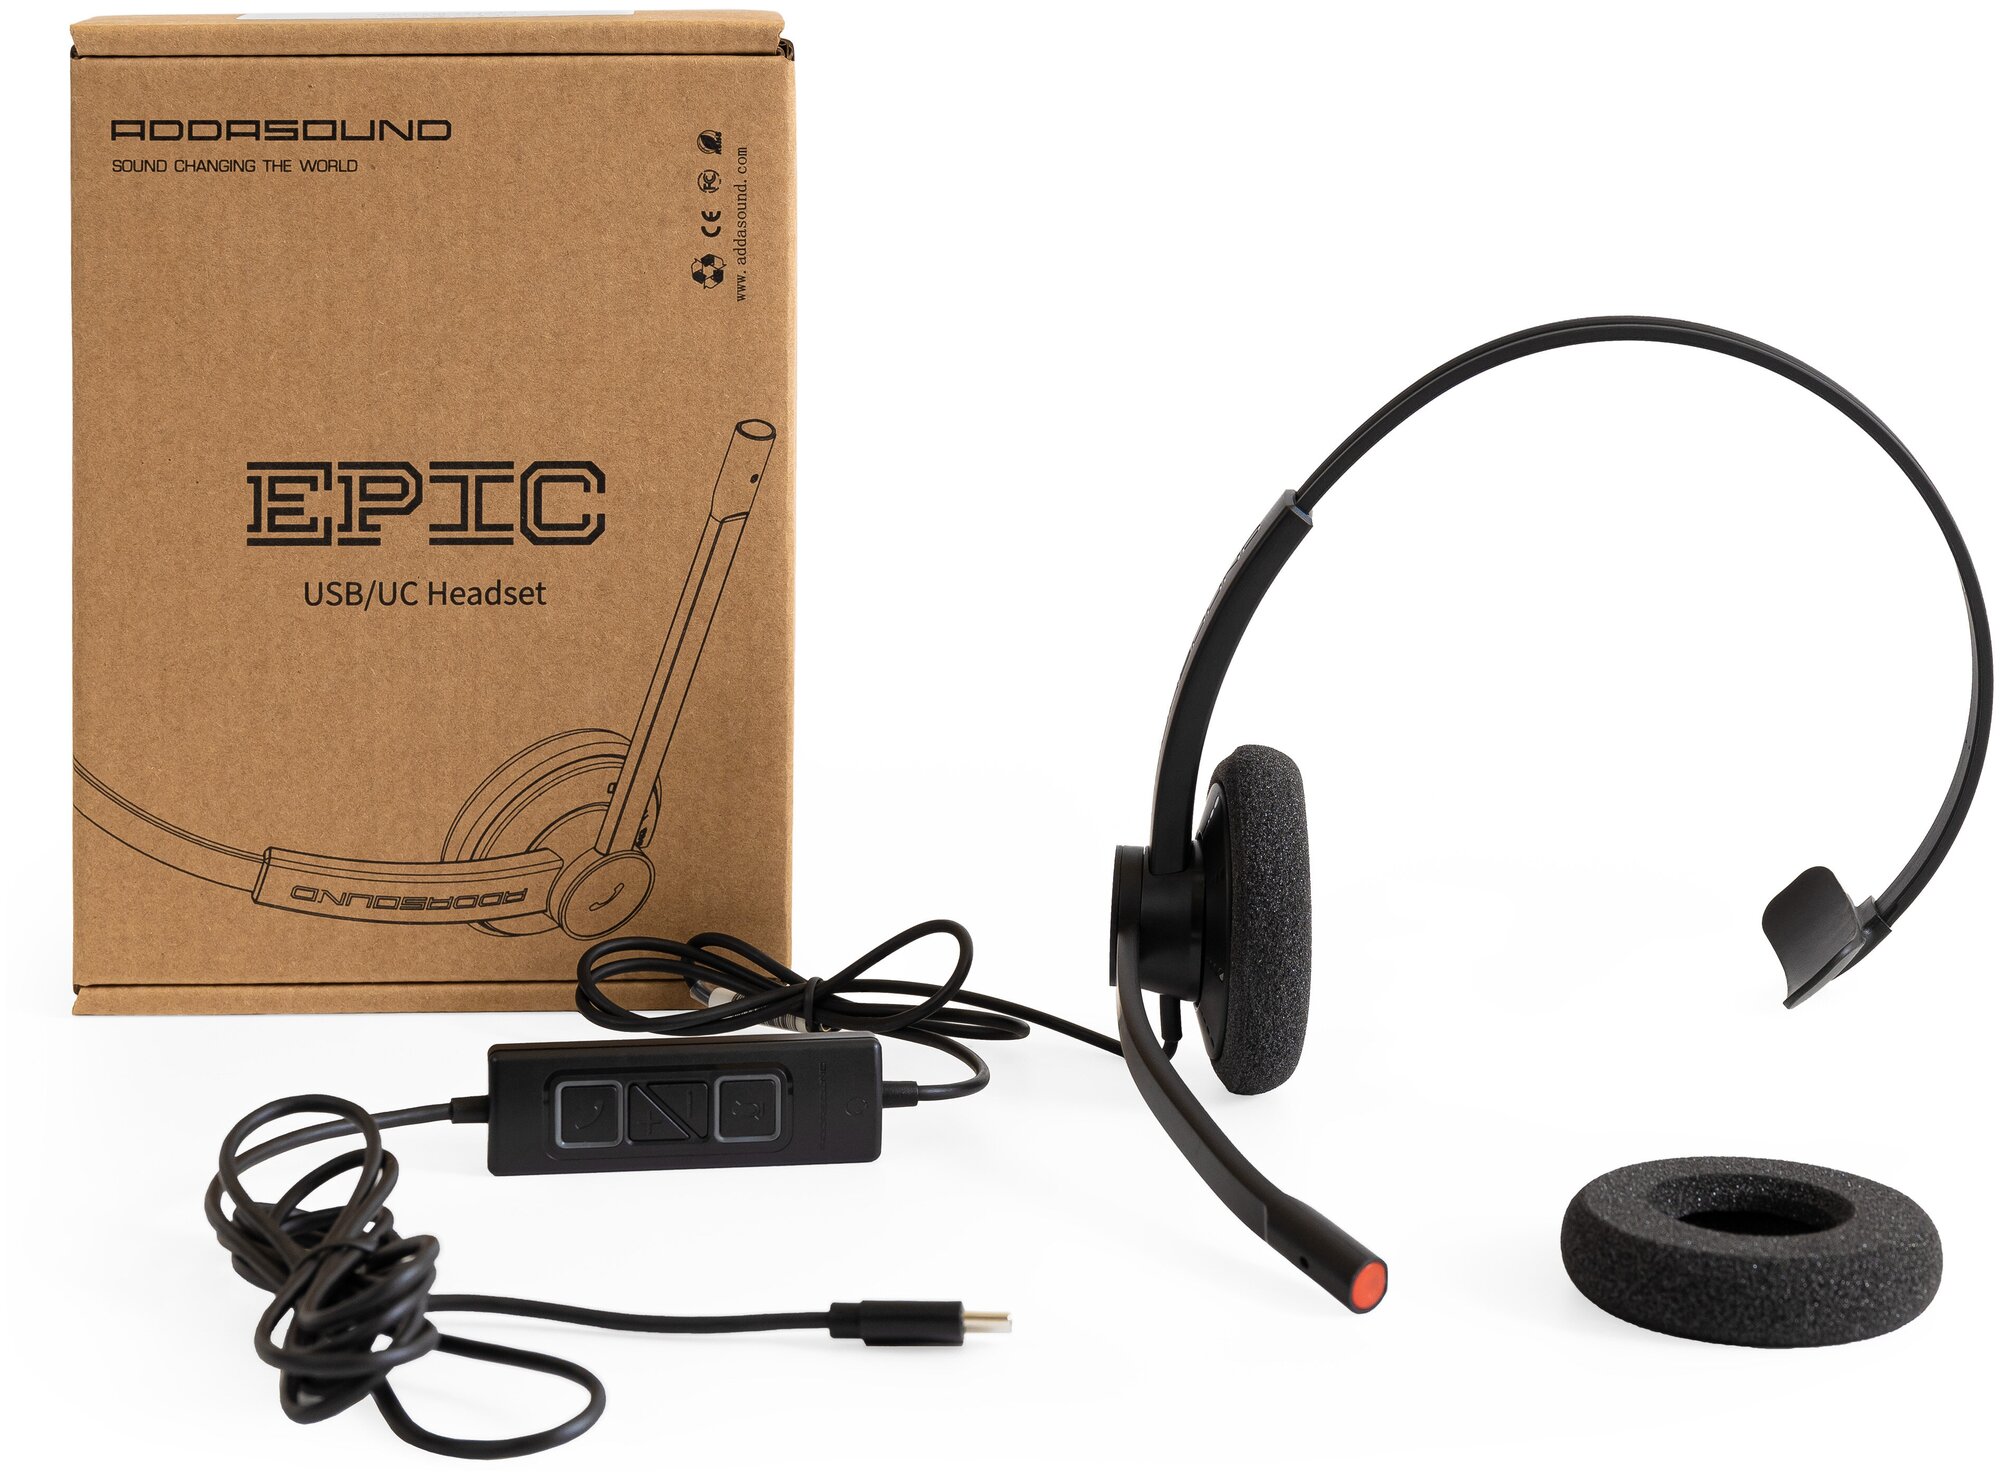 Профессиональная гарнитура с микрофоном для компьютера ADDASOUND Epic 301, USB-С, шумоподавление, 100% UC совместимость, цвет черно-серый (ADD-EPIC-301с)